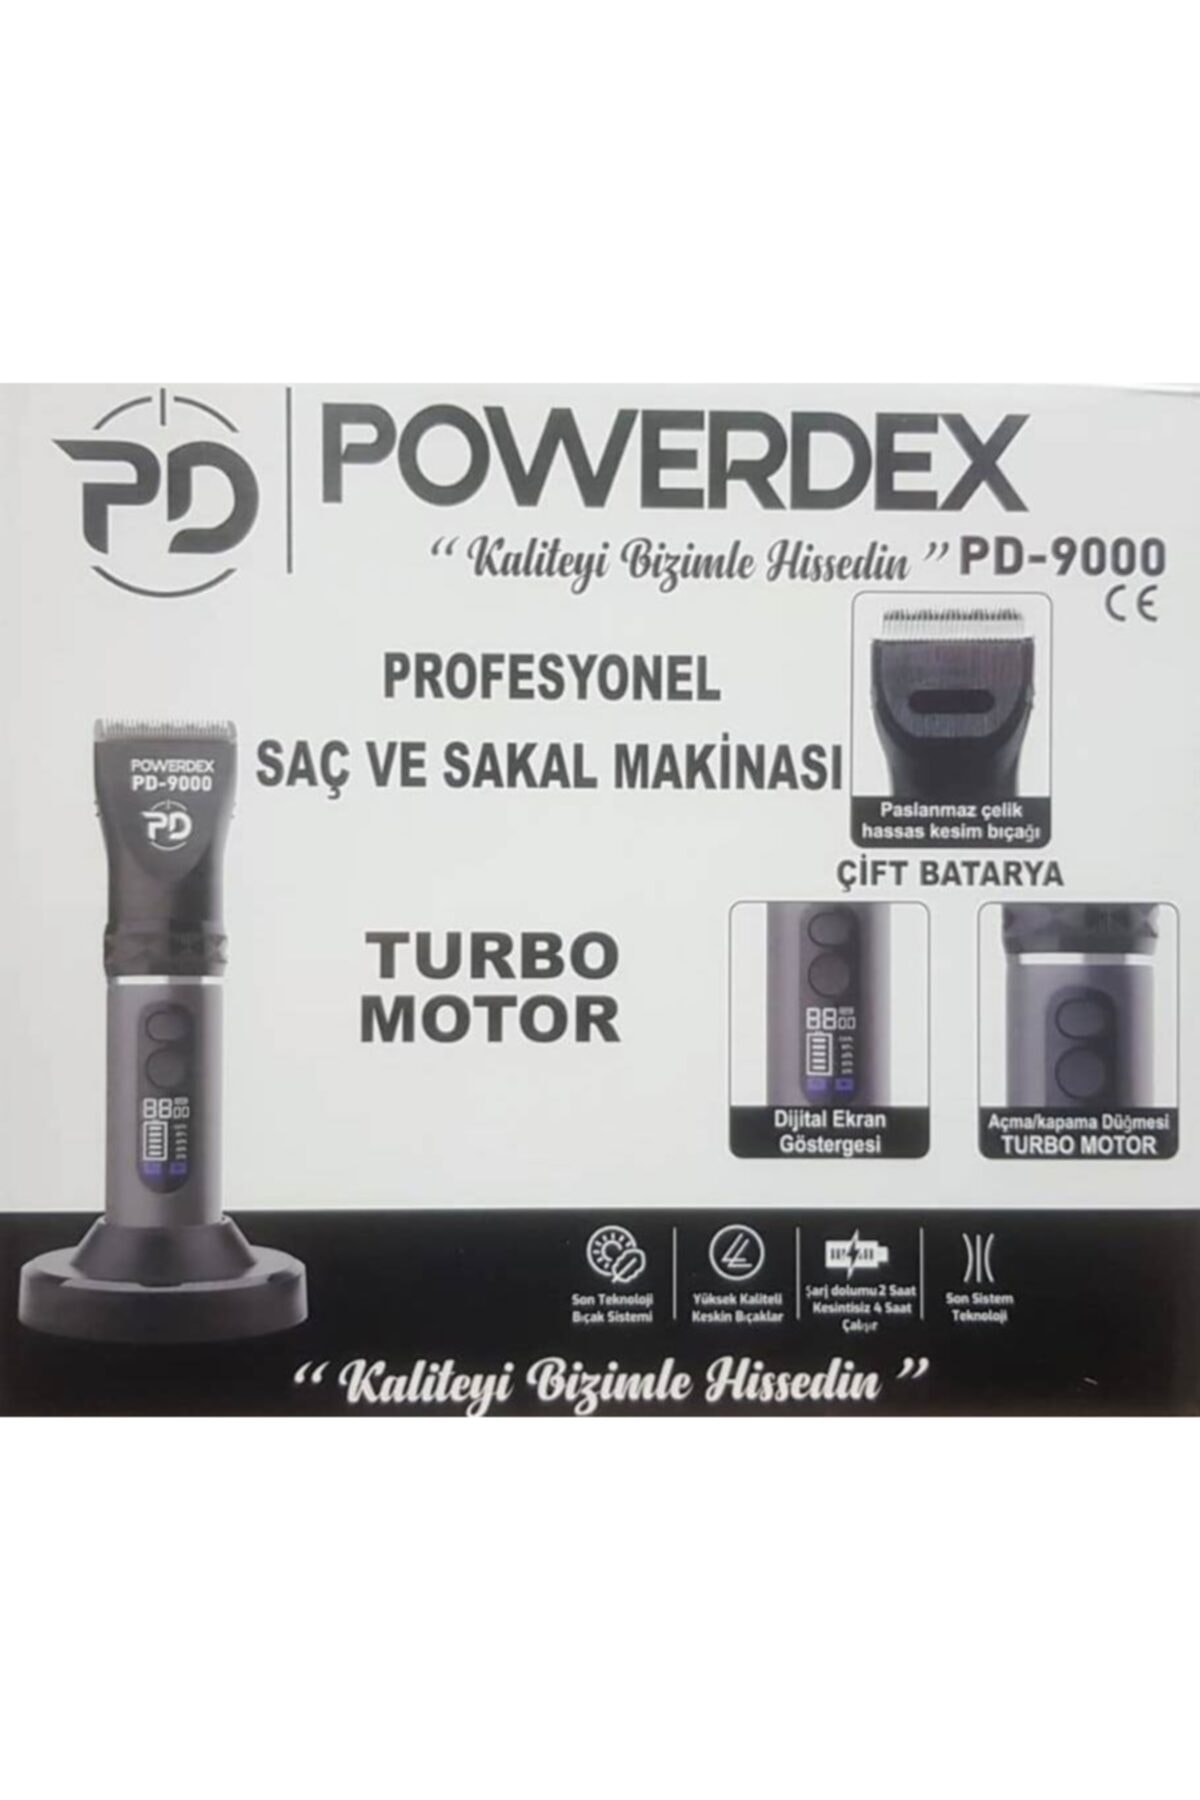 powerdex Erkek Saç Sakal Makinası Pd 9000 FV7239